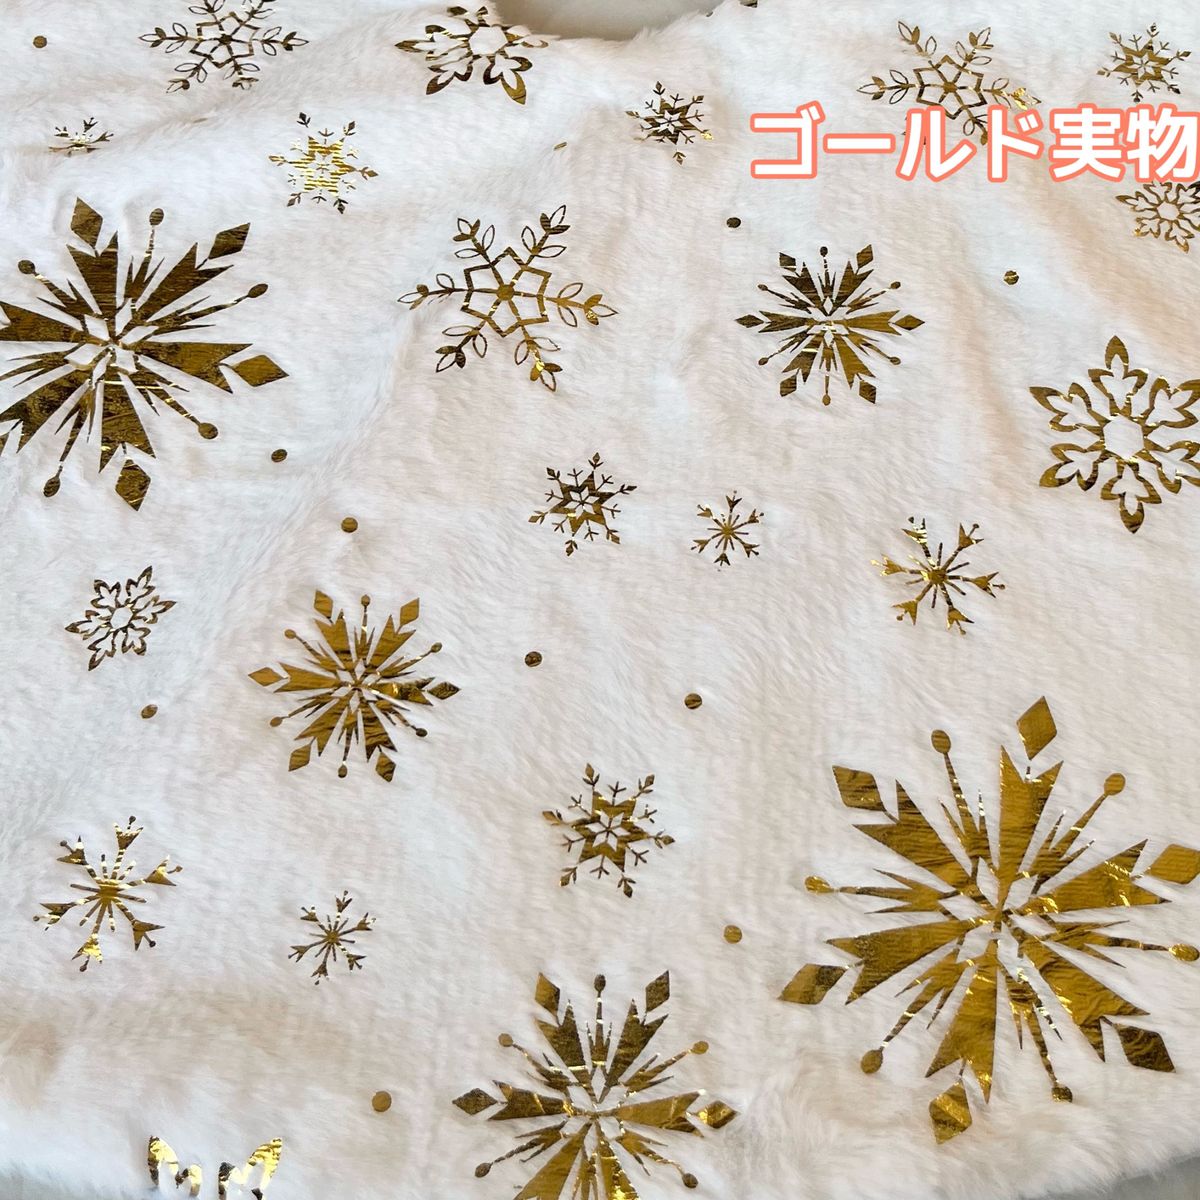 ツリースカート 78cm クリスマスツリー 足元隠し 装飾 ツリーマット ゴールド 金 白 プレゼント 雪 結晶